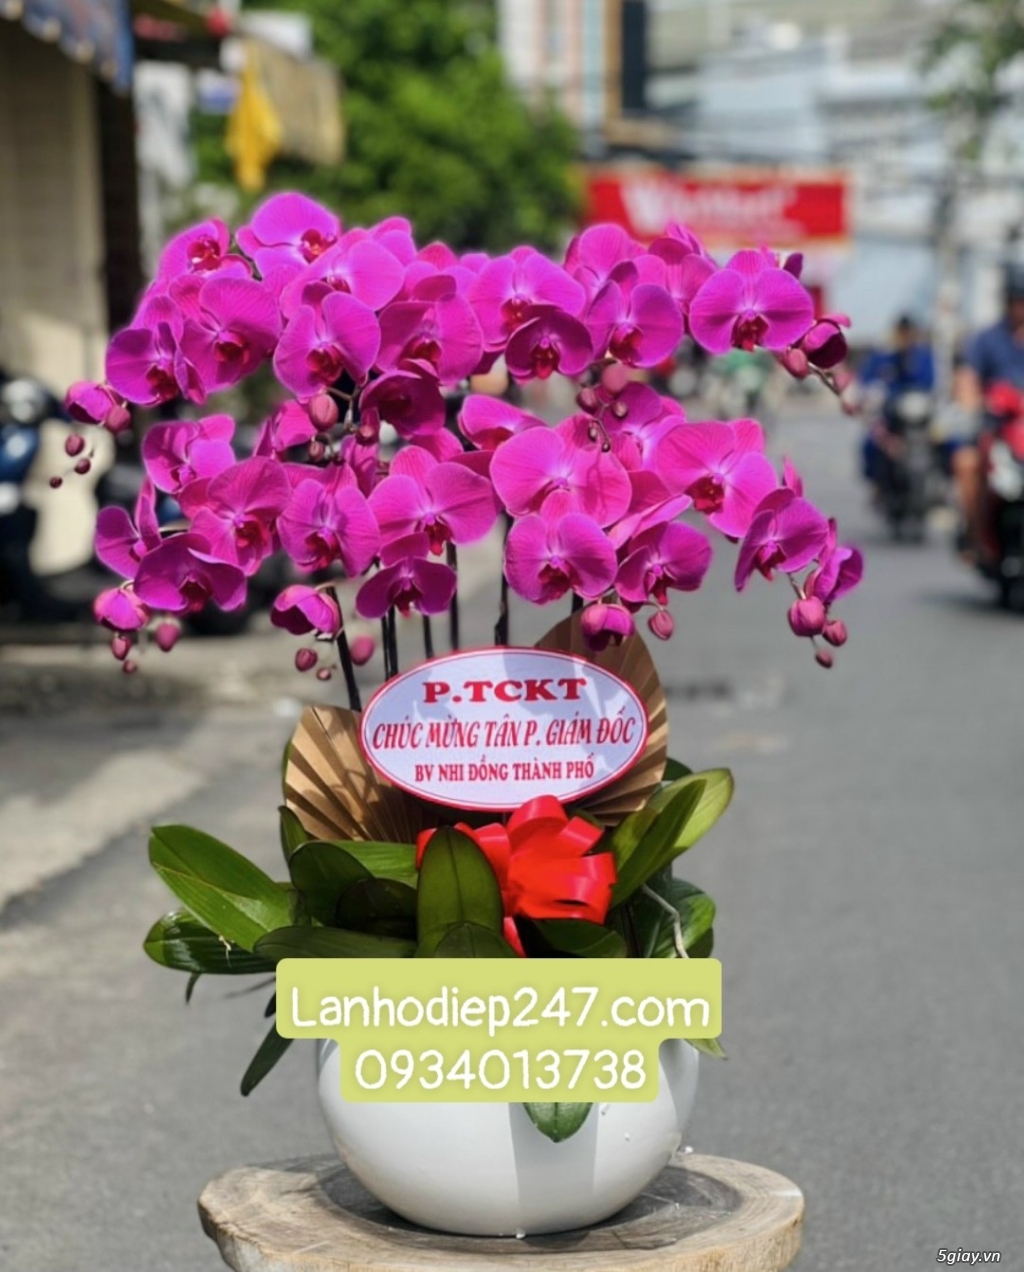 Địa chỉ mua hoa lan hồ điệp Apollo cao cấp uy tín tại Sài Gòn